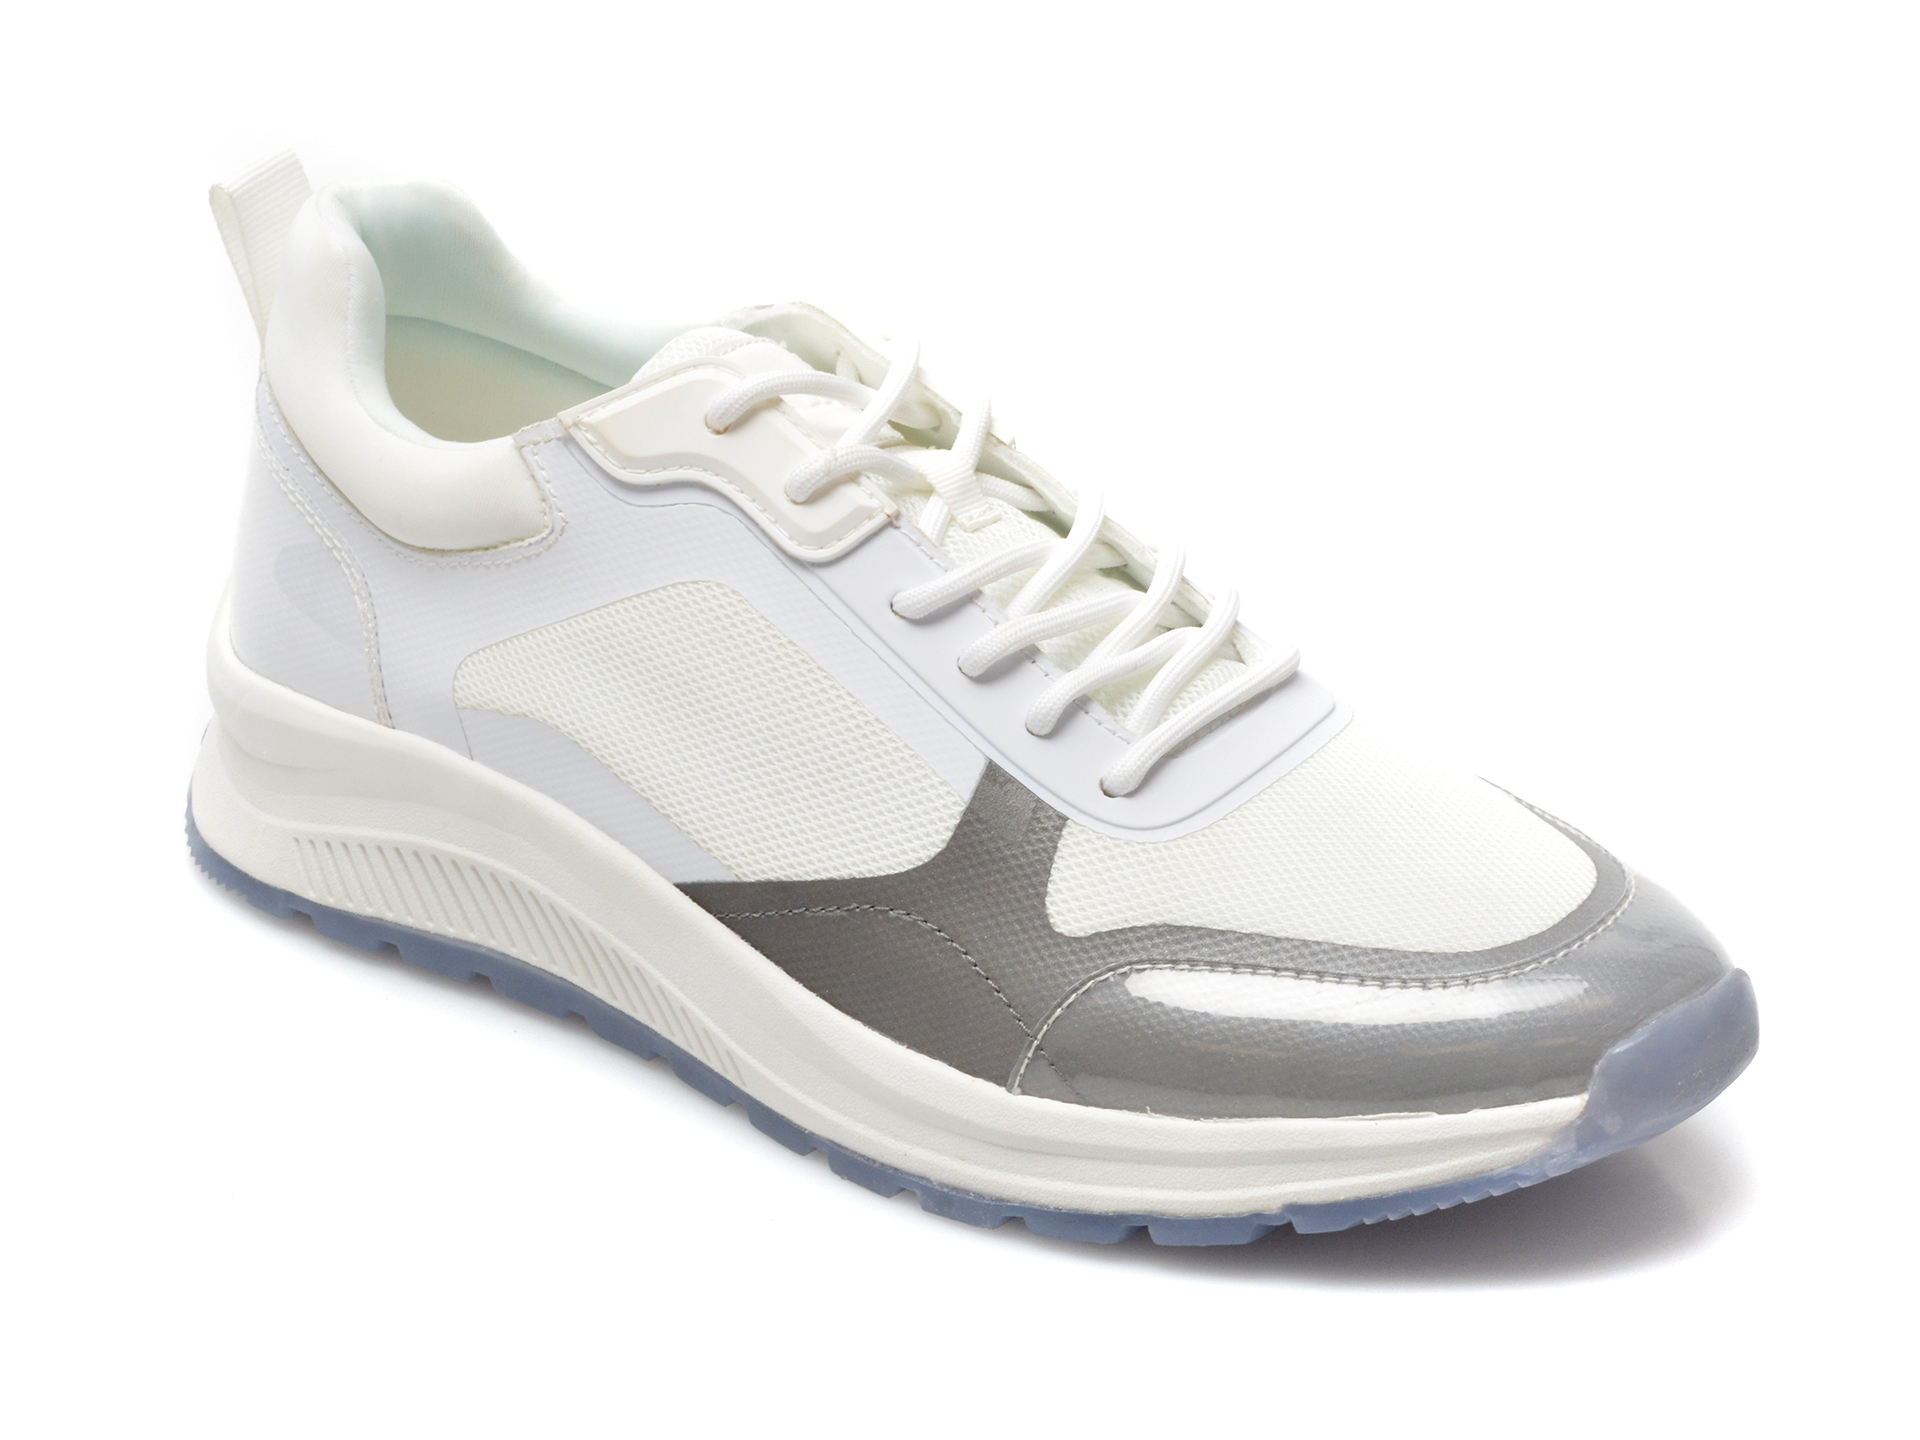 Pantofi sport ALDO albi, 13388742, din material textil Aldo